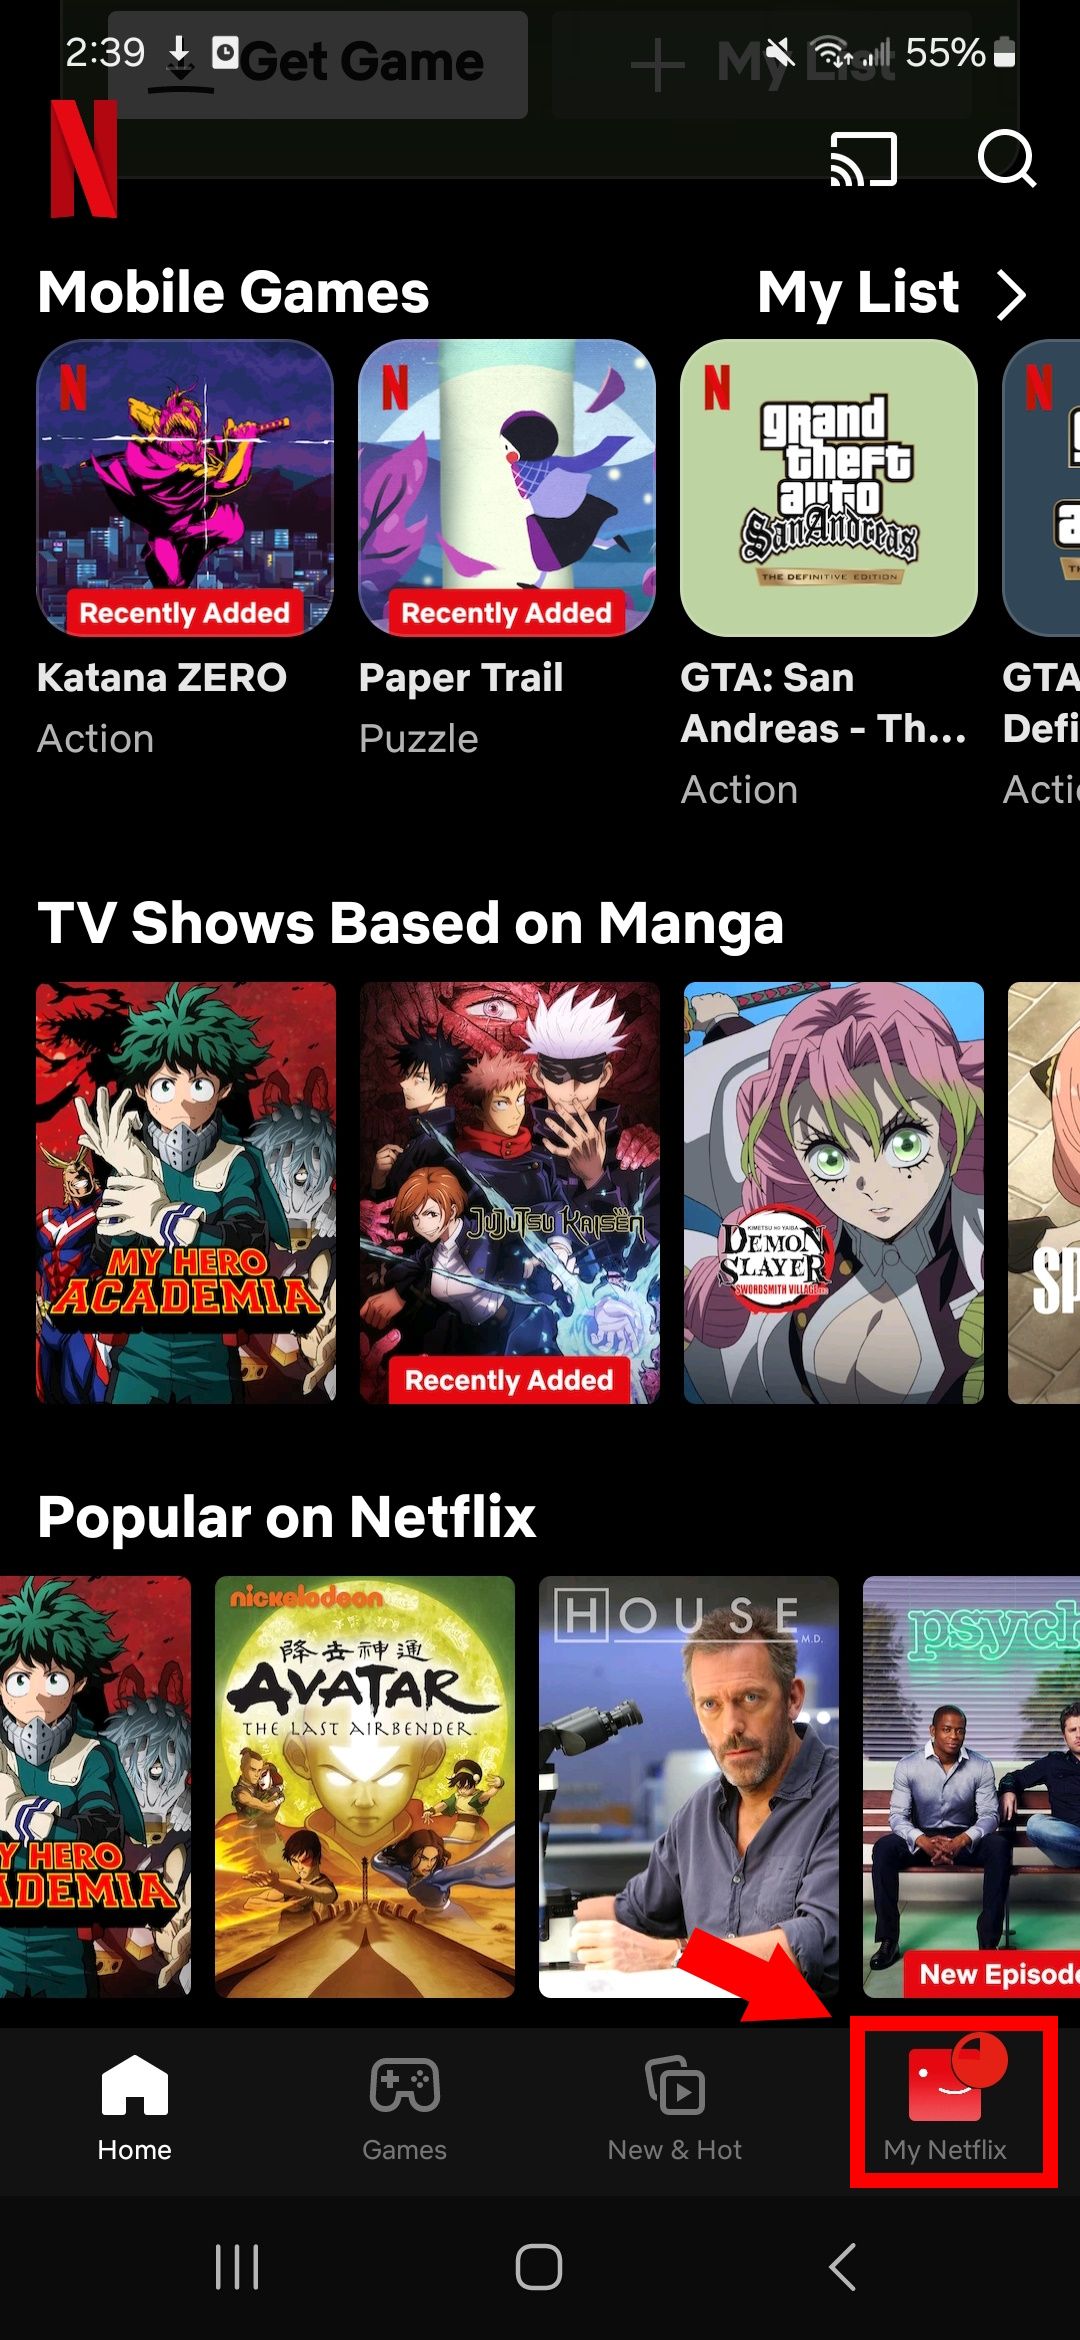 contorno de quadrado vermelho sobre meu ícone do Netflix no canto inferior direito do aplicativo Netflix